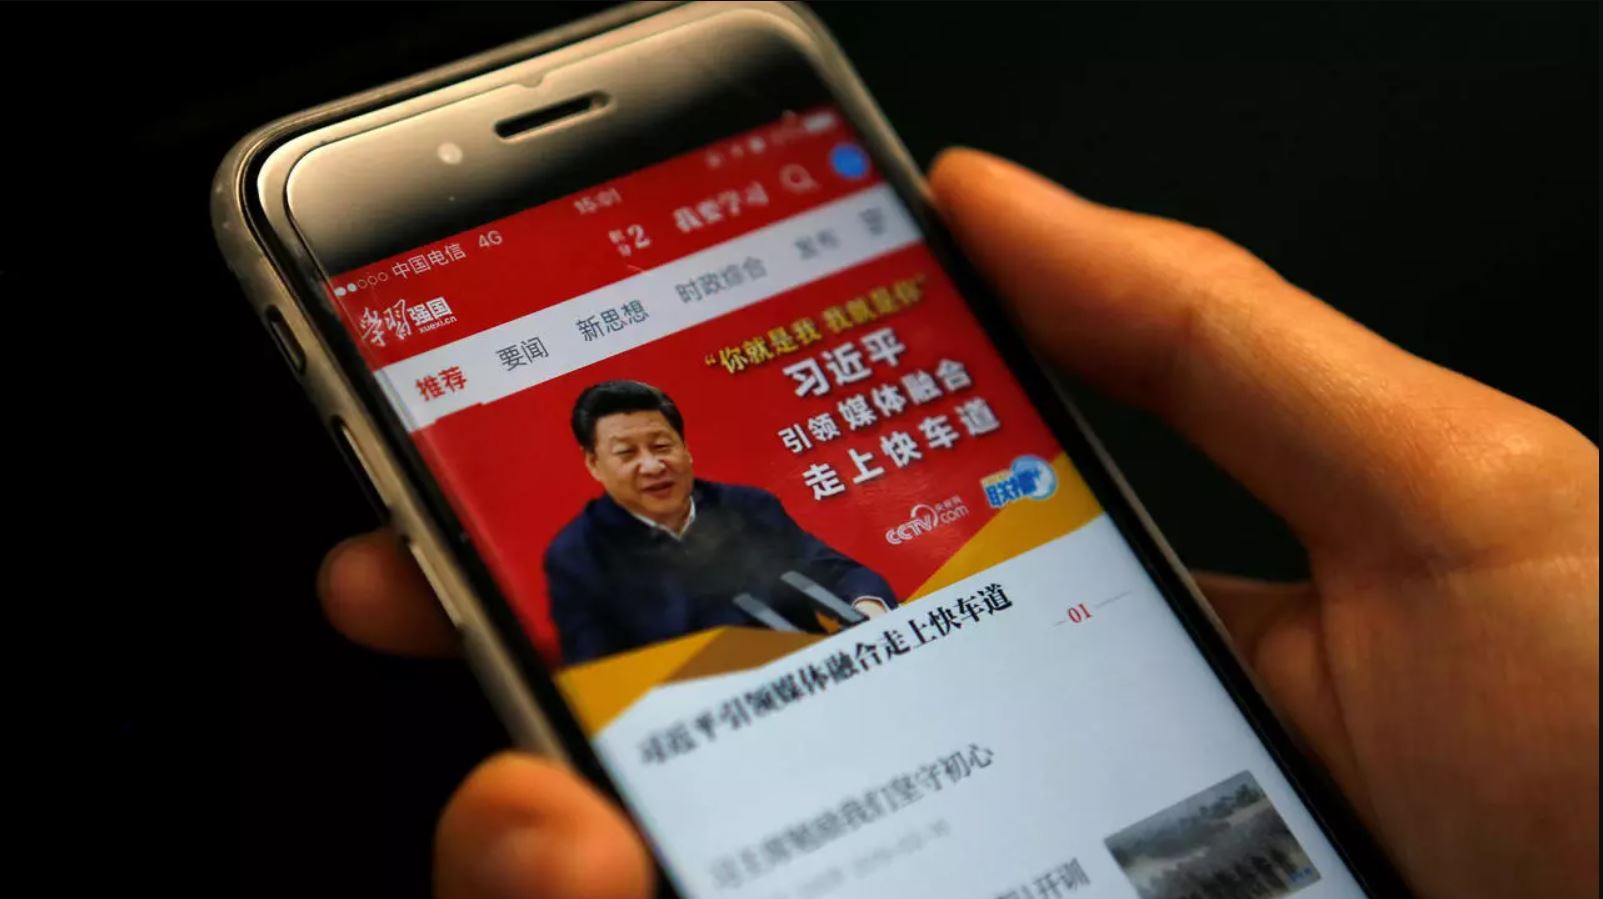 Xi Jinping gasta millones para recobrar credibilidad en China publicitando propaganda comunista en las redes sociales